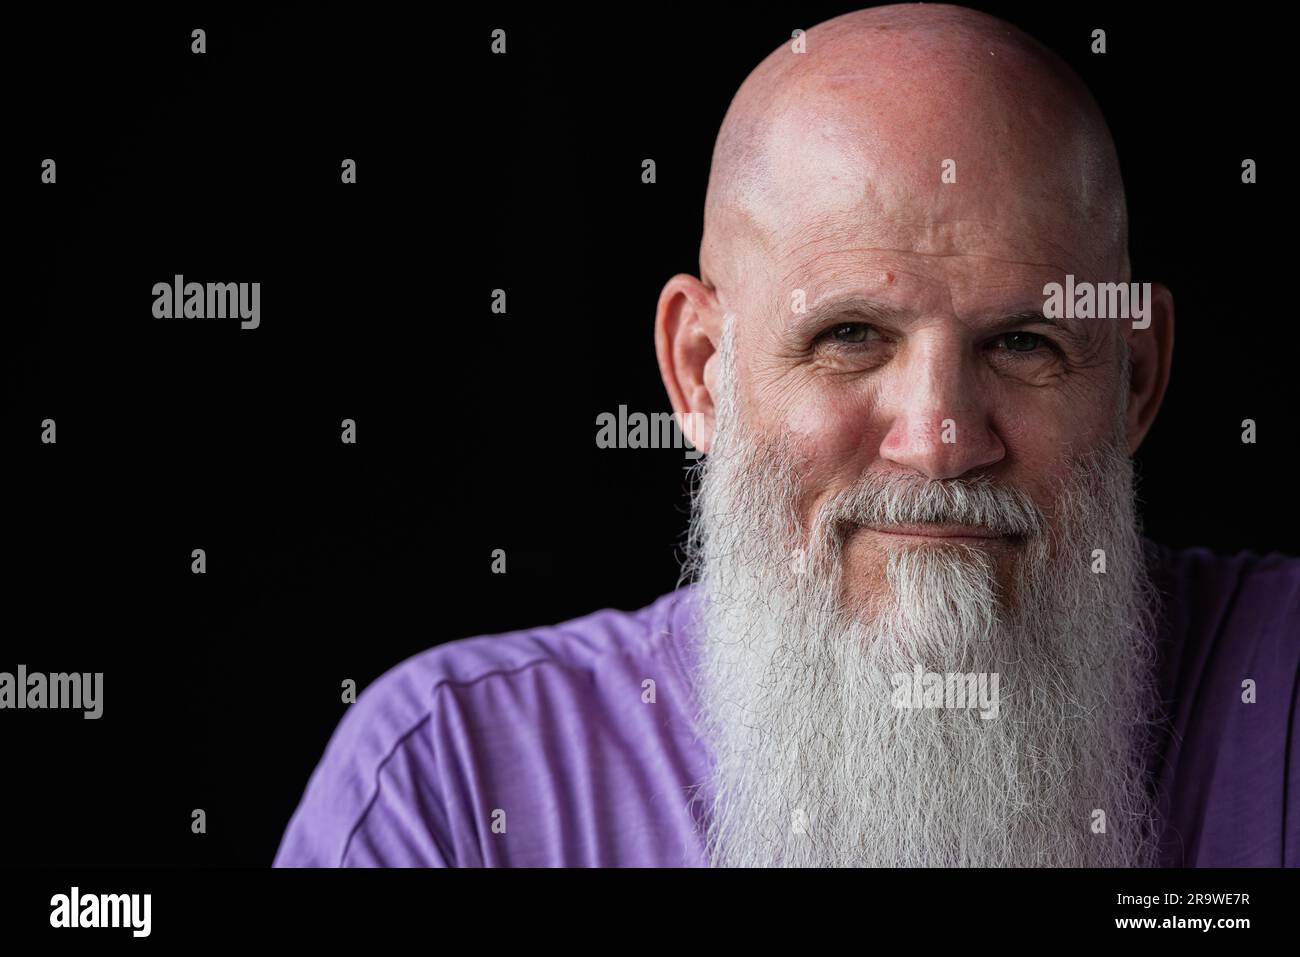 Portrait d'un homme avec une longue barbe grise portant un t-shirt violet gros plan Banque D'Images